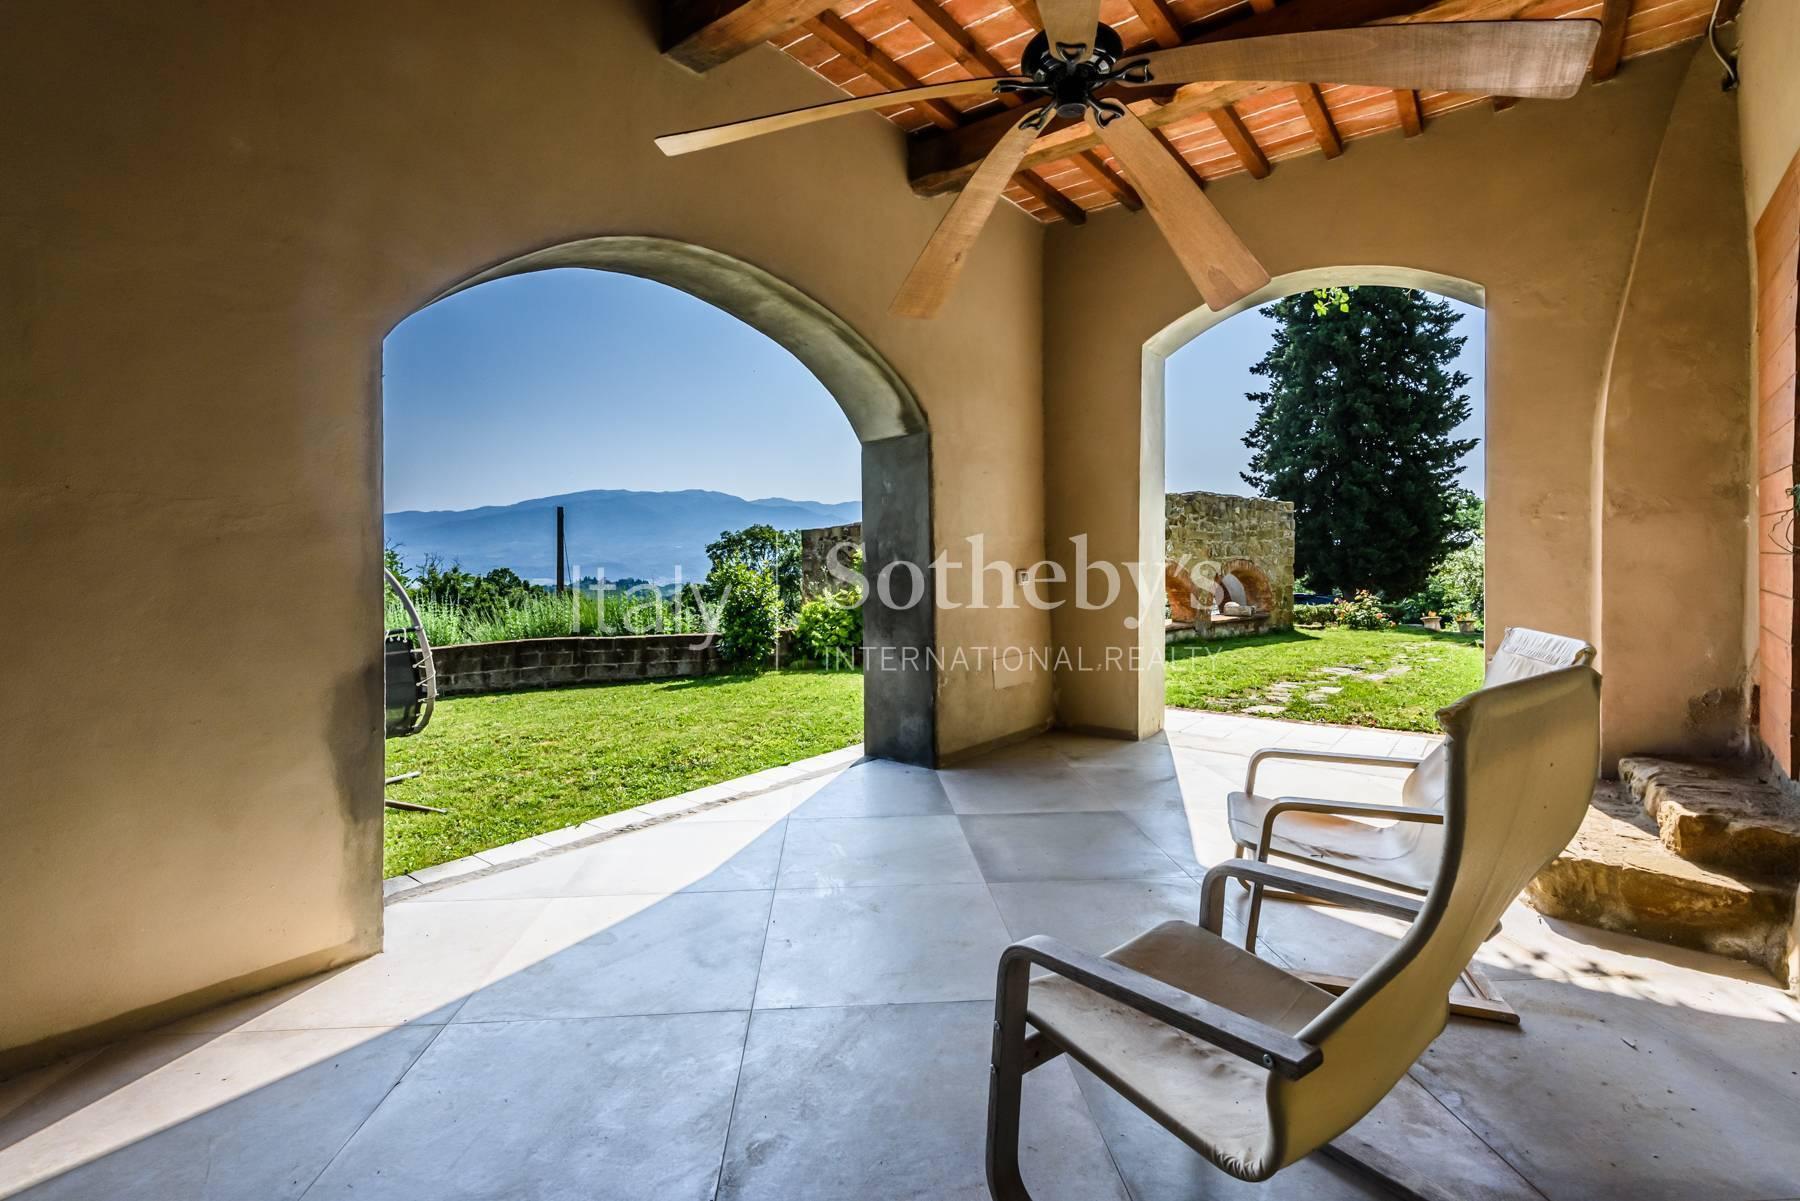 Panoramica villa rinascimentale con giardino all' italiana - 3